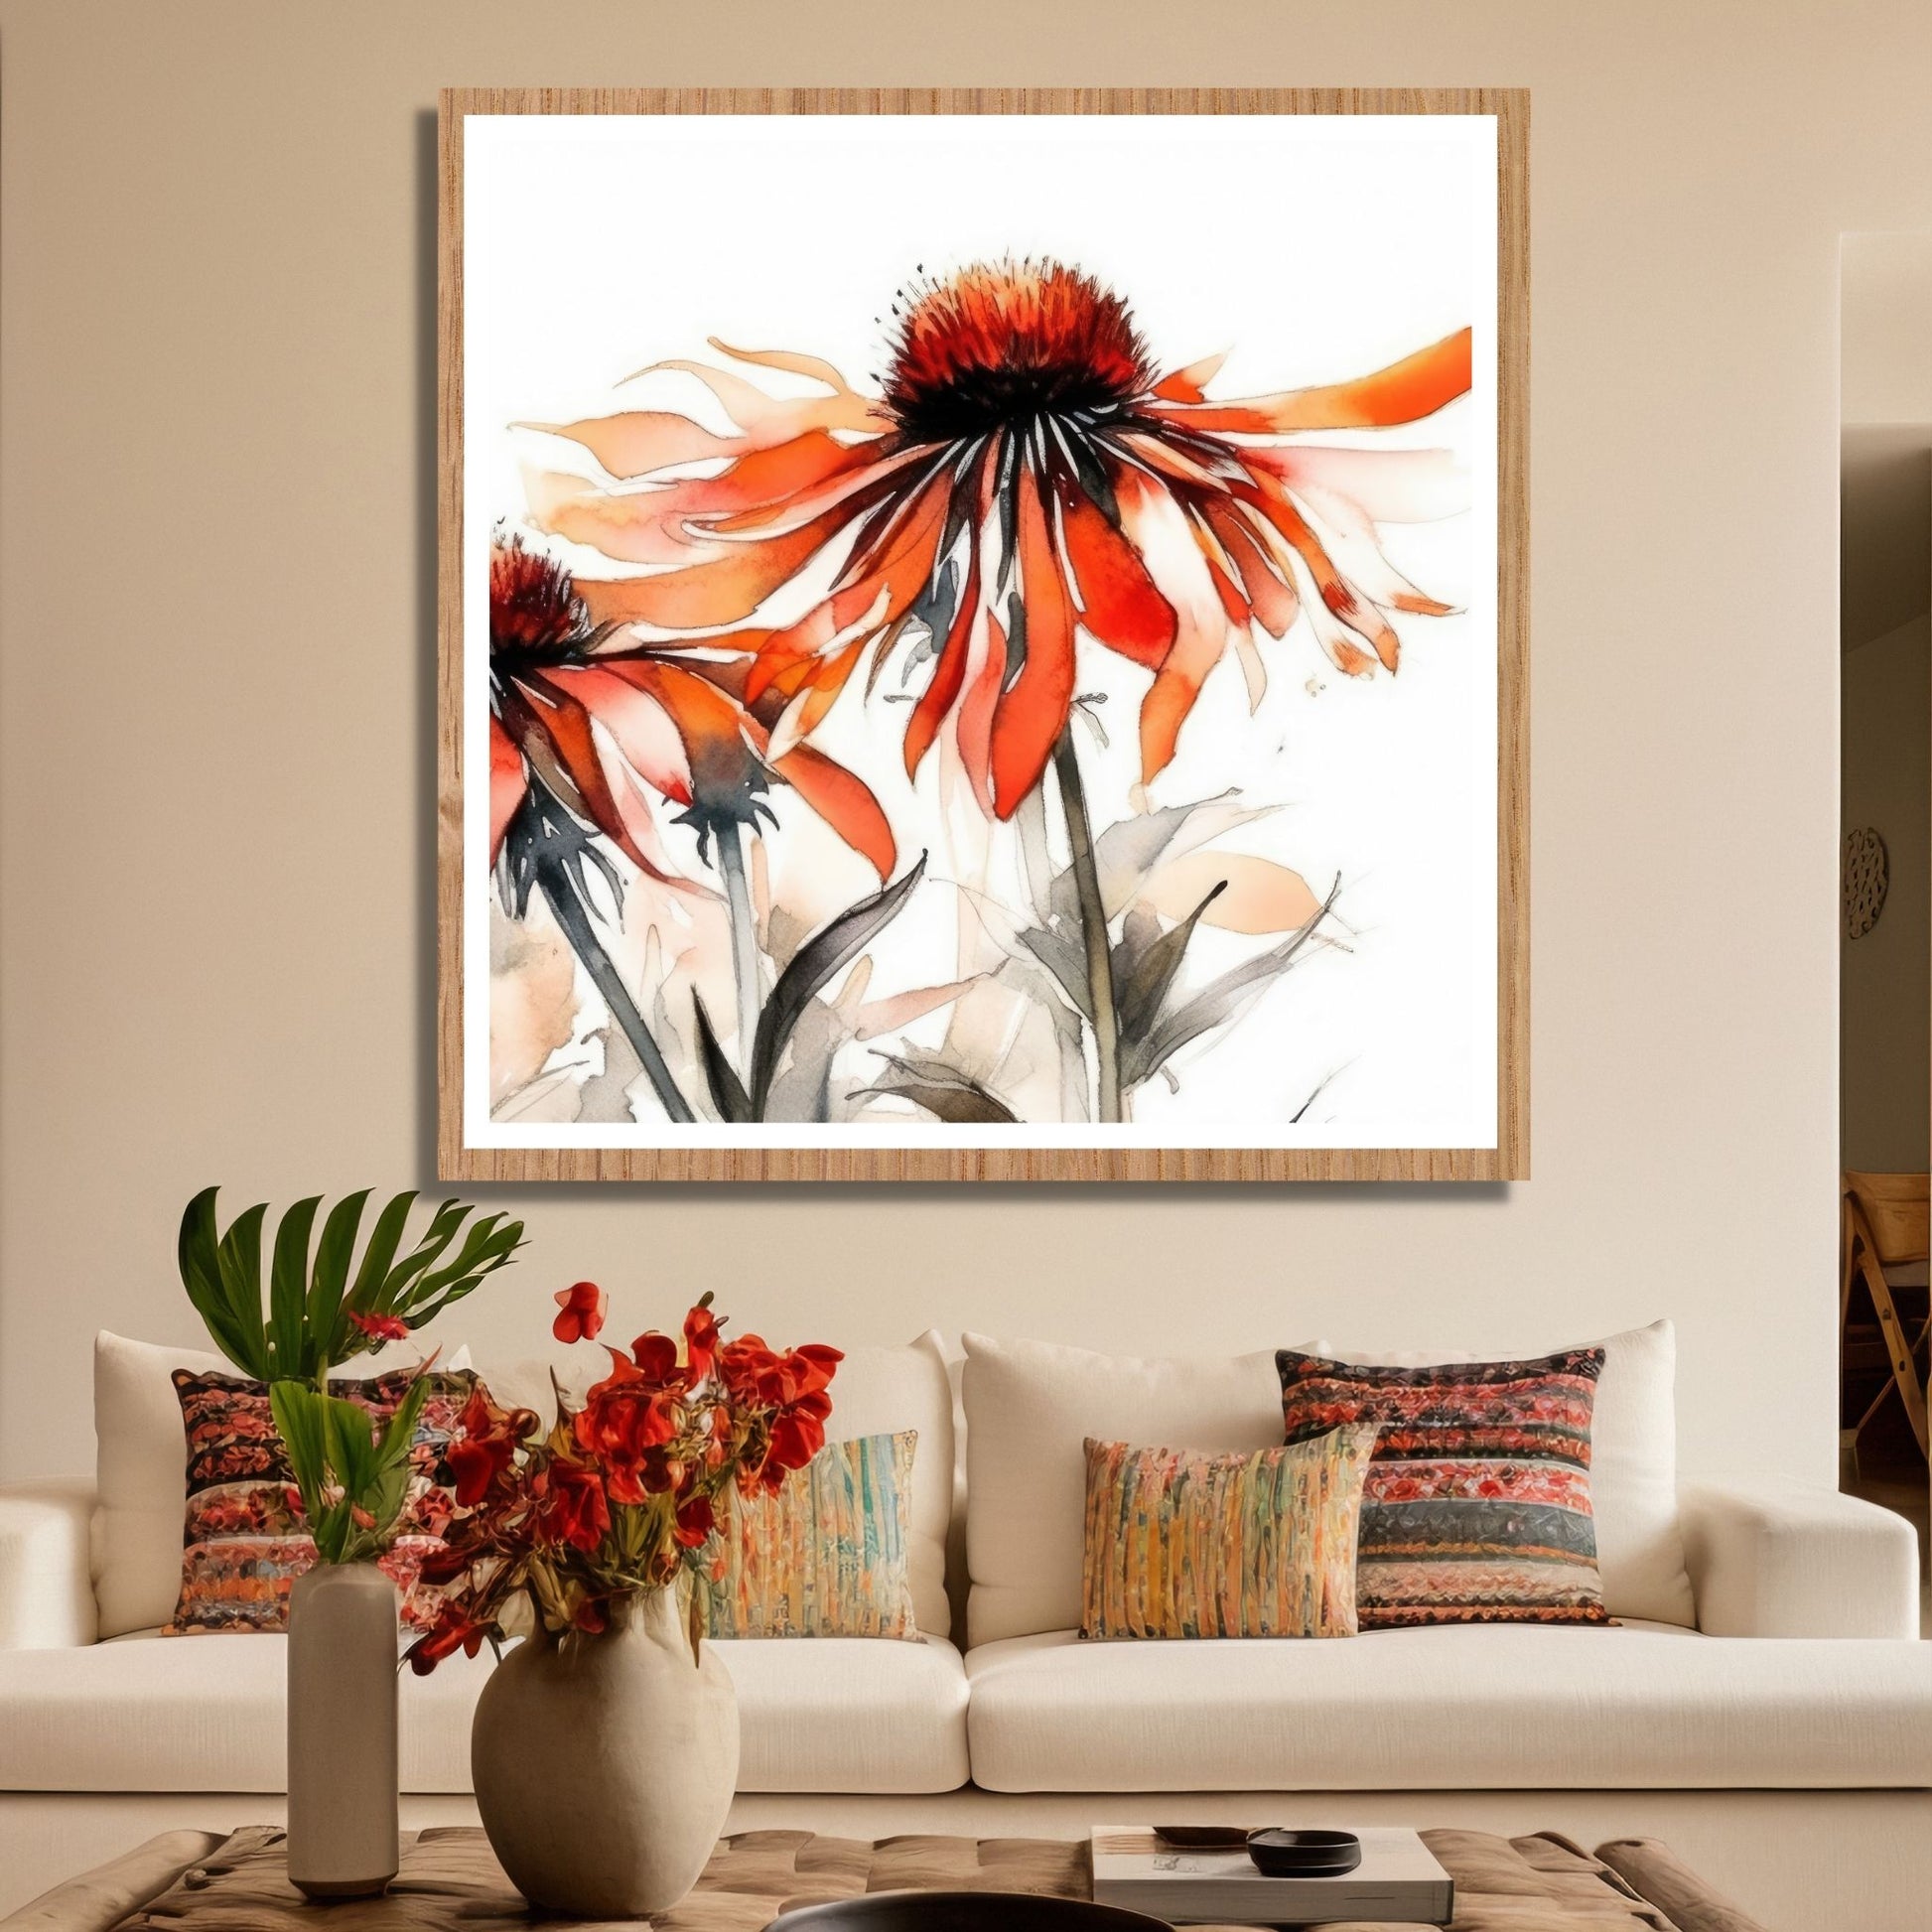 Nydelig abstrakt motiv av Solhattblomster. Blomstene er i rød-oransje nyanser. Dette er en grafisk fremstilling på plakat. På bildet henger plakaten over en sofa.